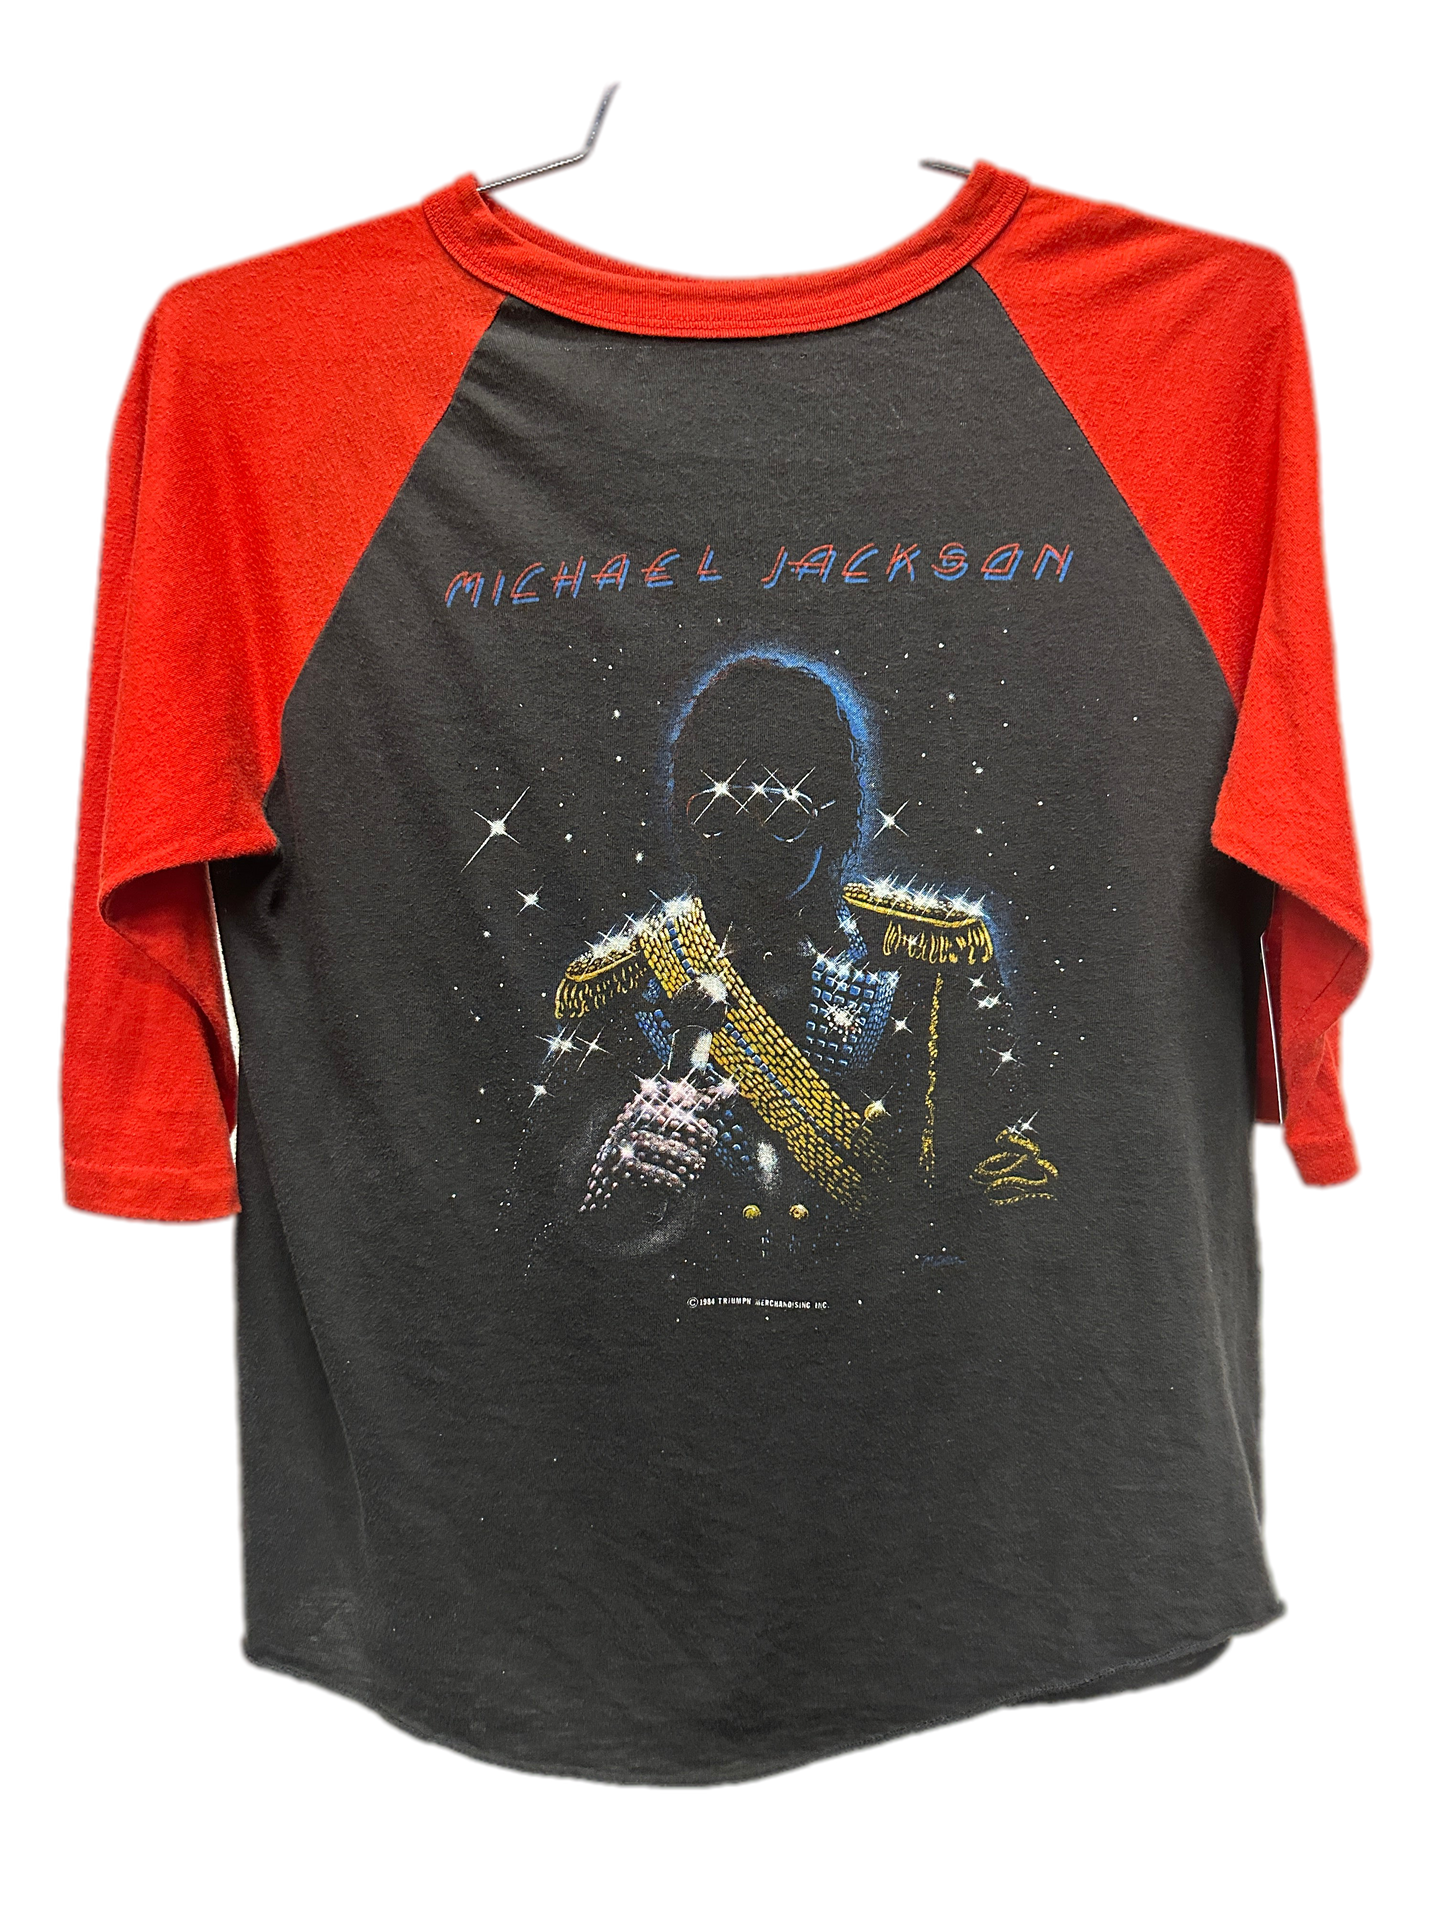 '84 Michael Jackson Victory Tour Raglan Music Shirt sz L